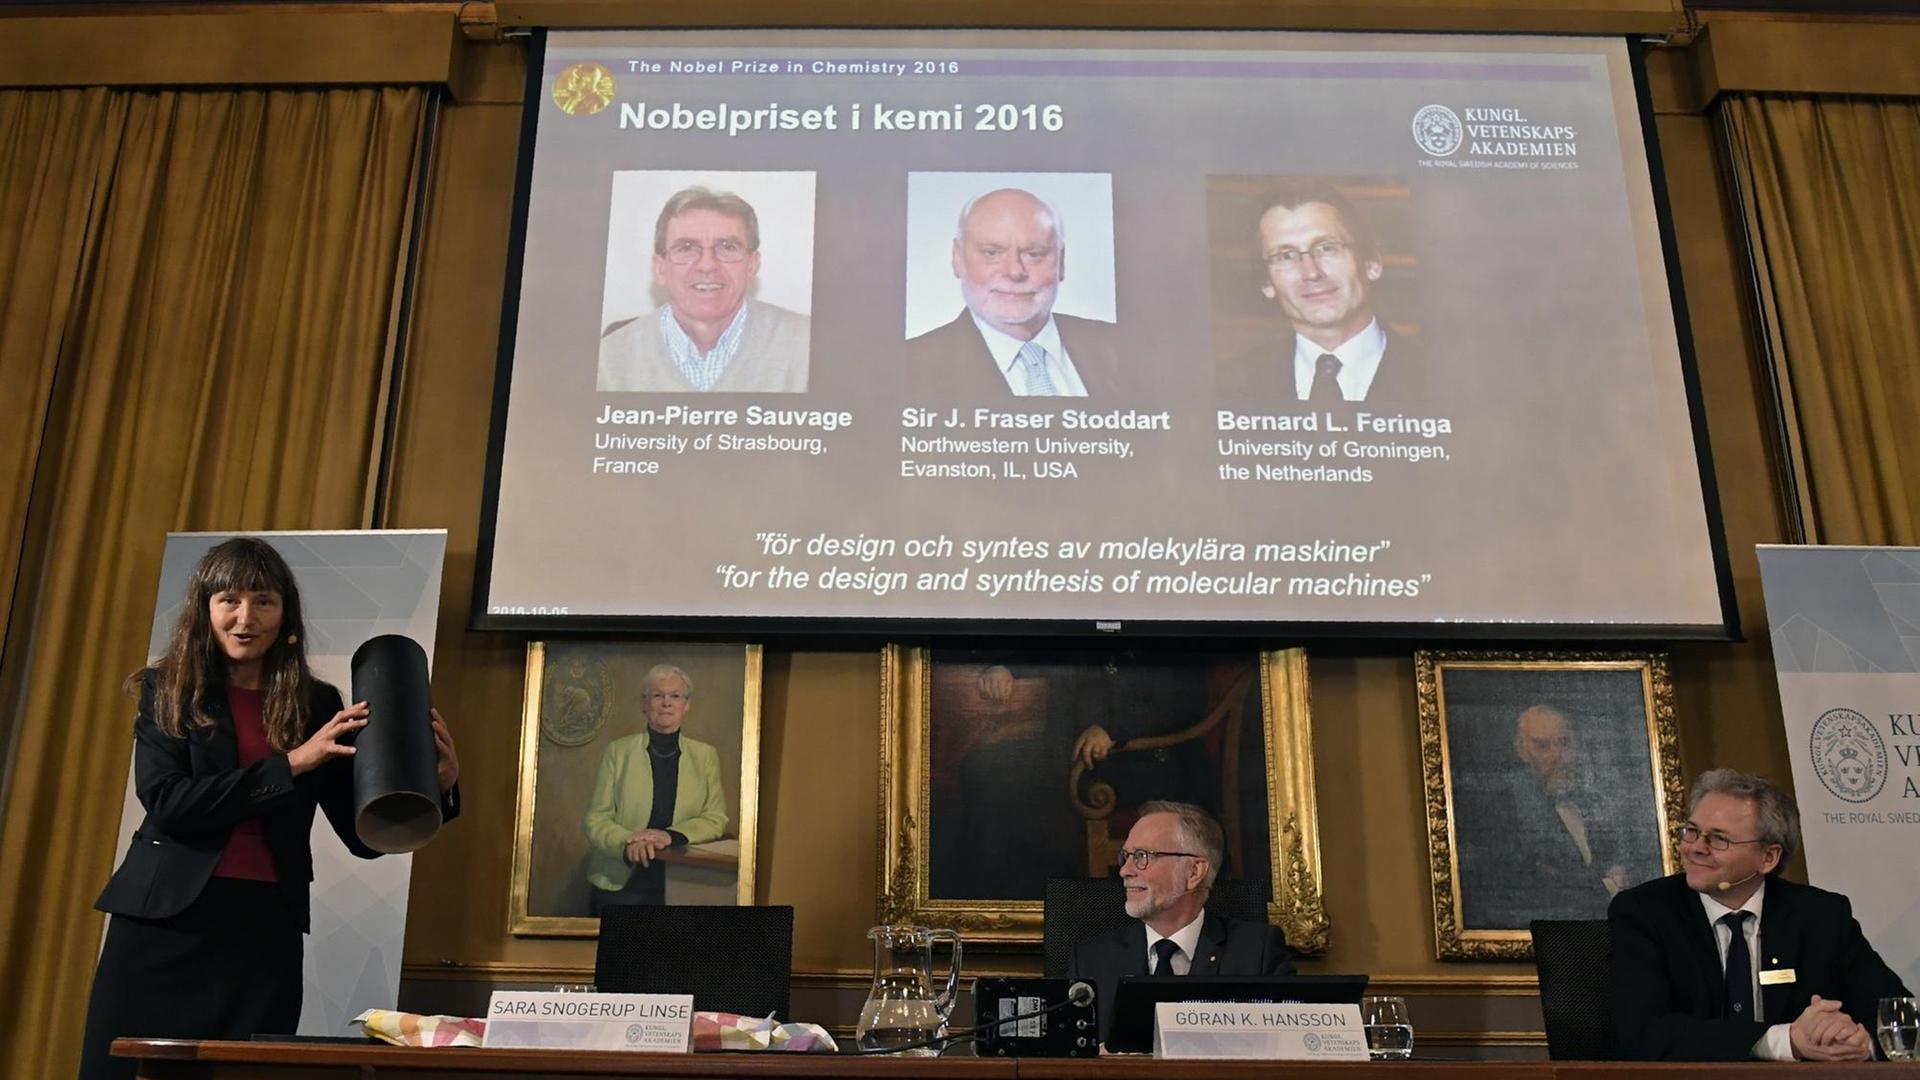 Die Jury verkündet in Stockholm, dass Jean-Pierre Sauvage, James Fraser Stoddart und Bernard Feringa den Chemienobelpreis 2016 erhalten werden.